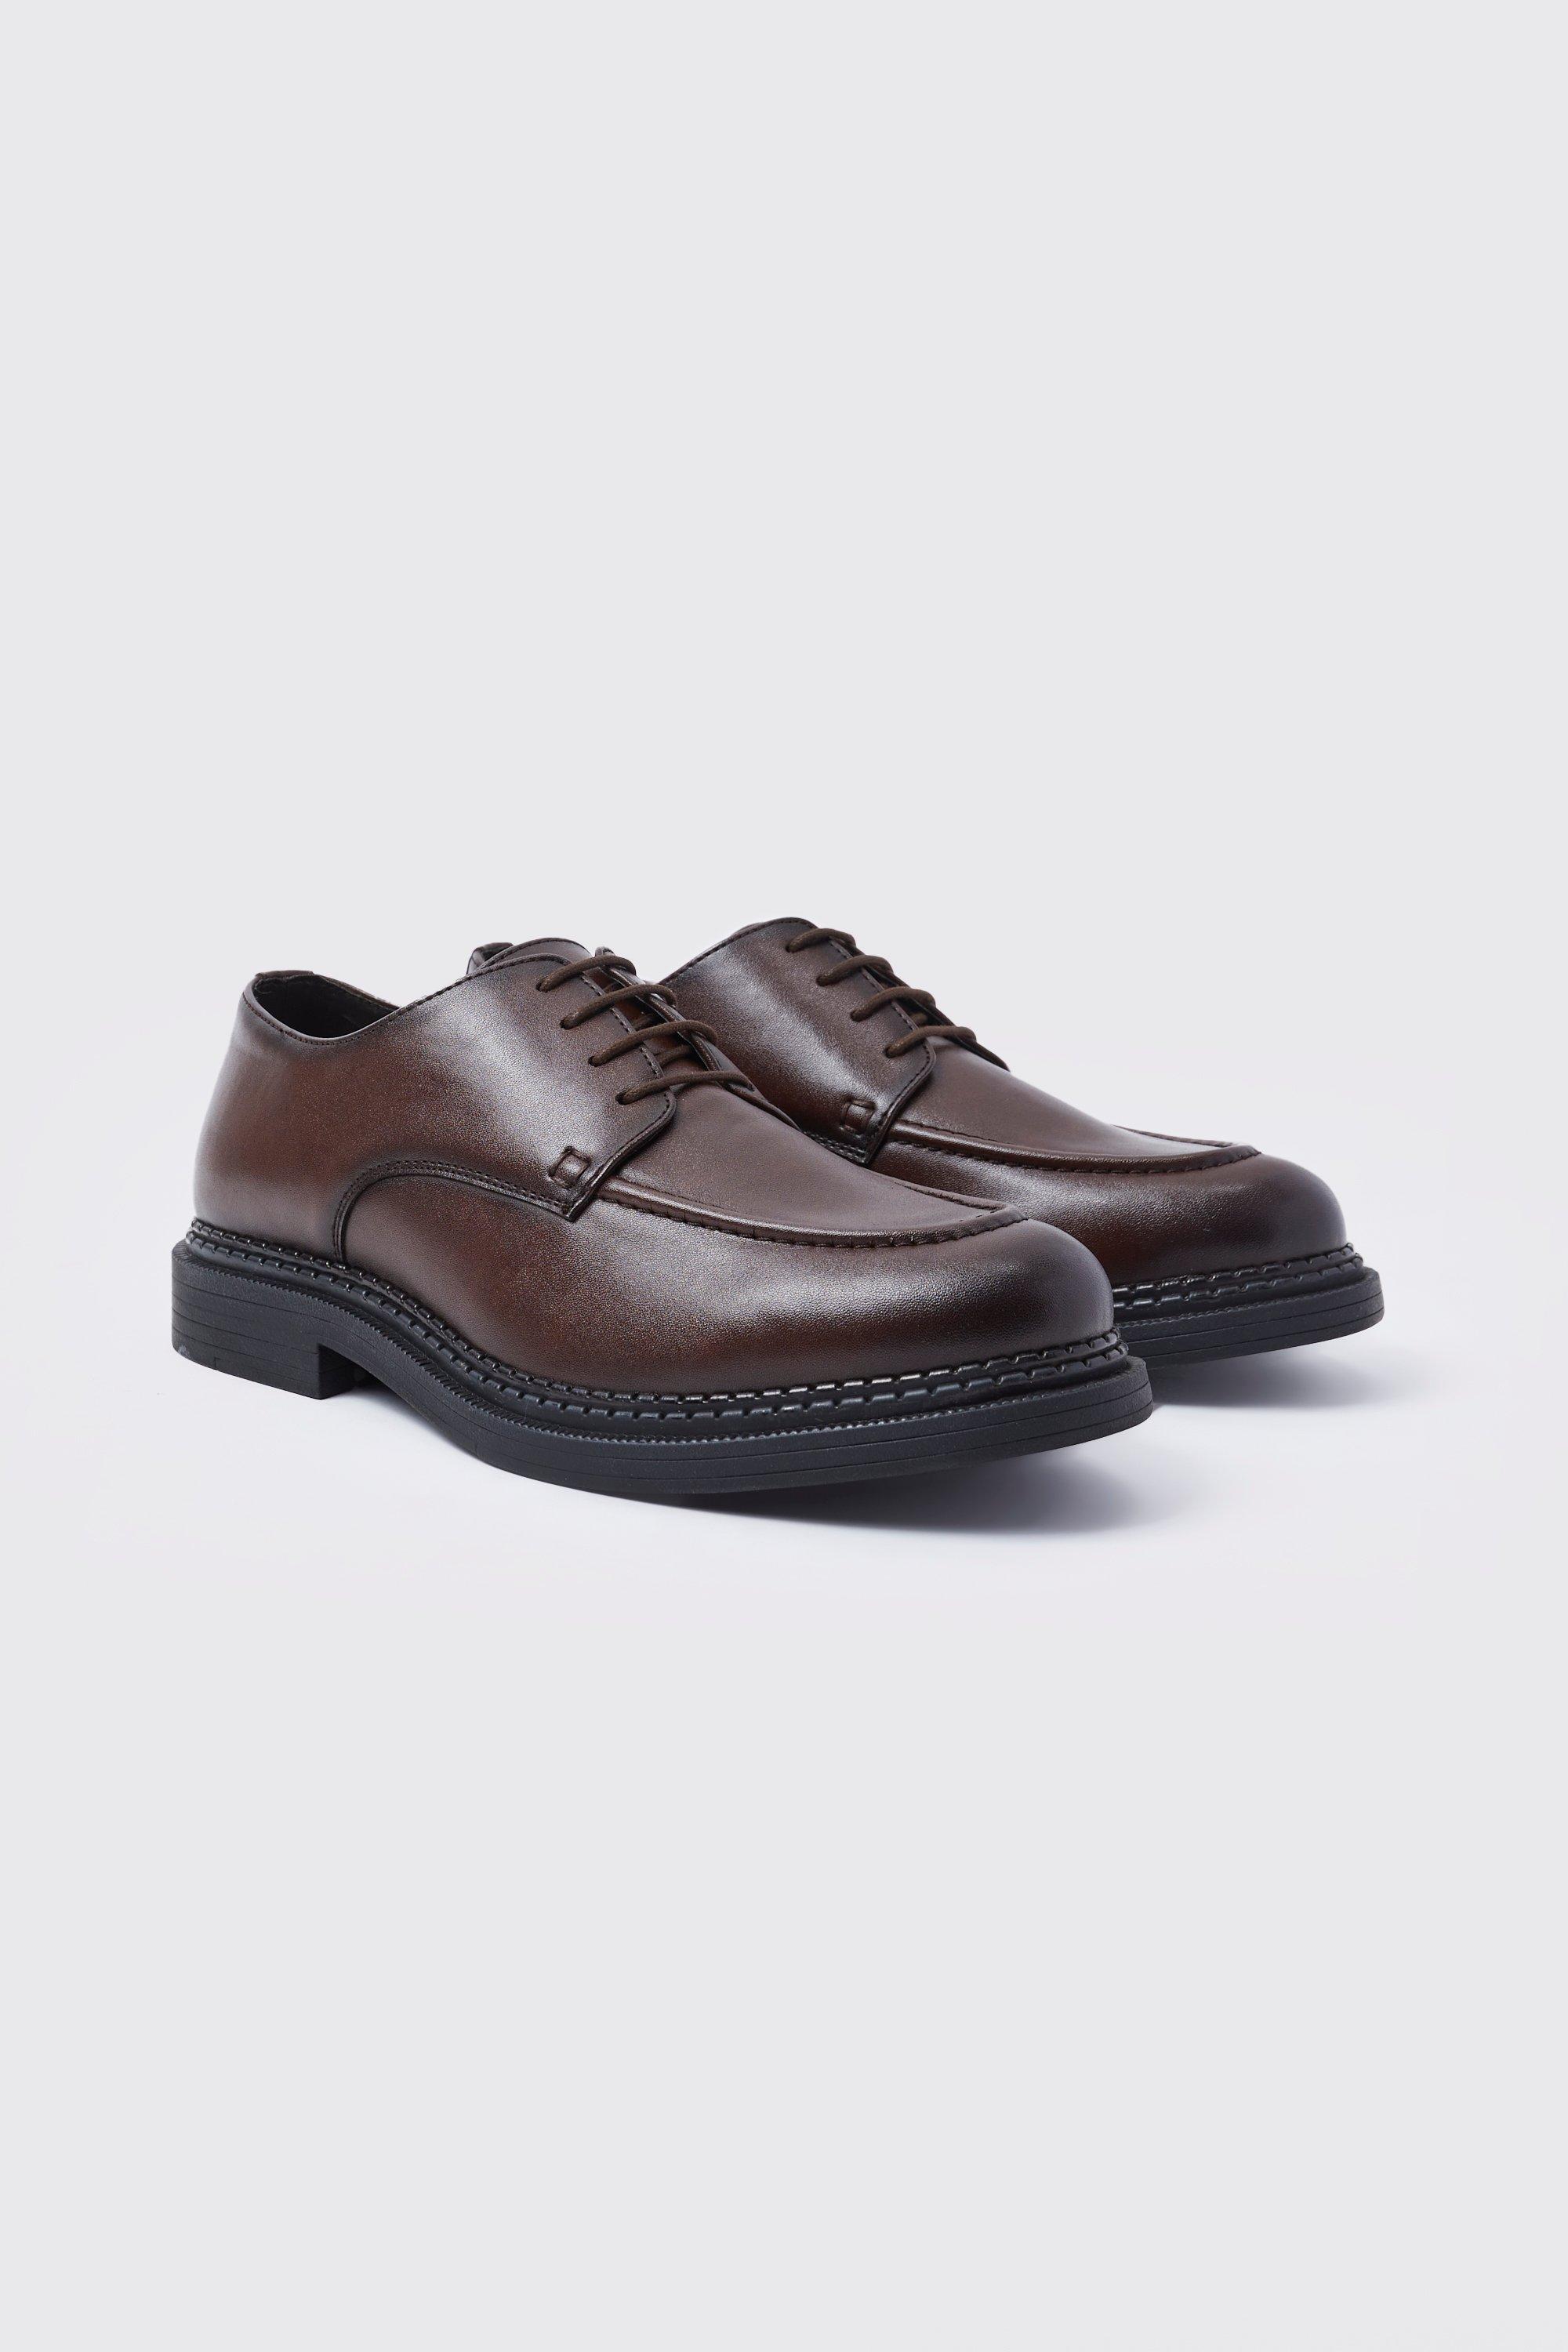 chaussures habillées homme - marron - 43, marron